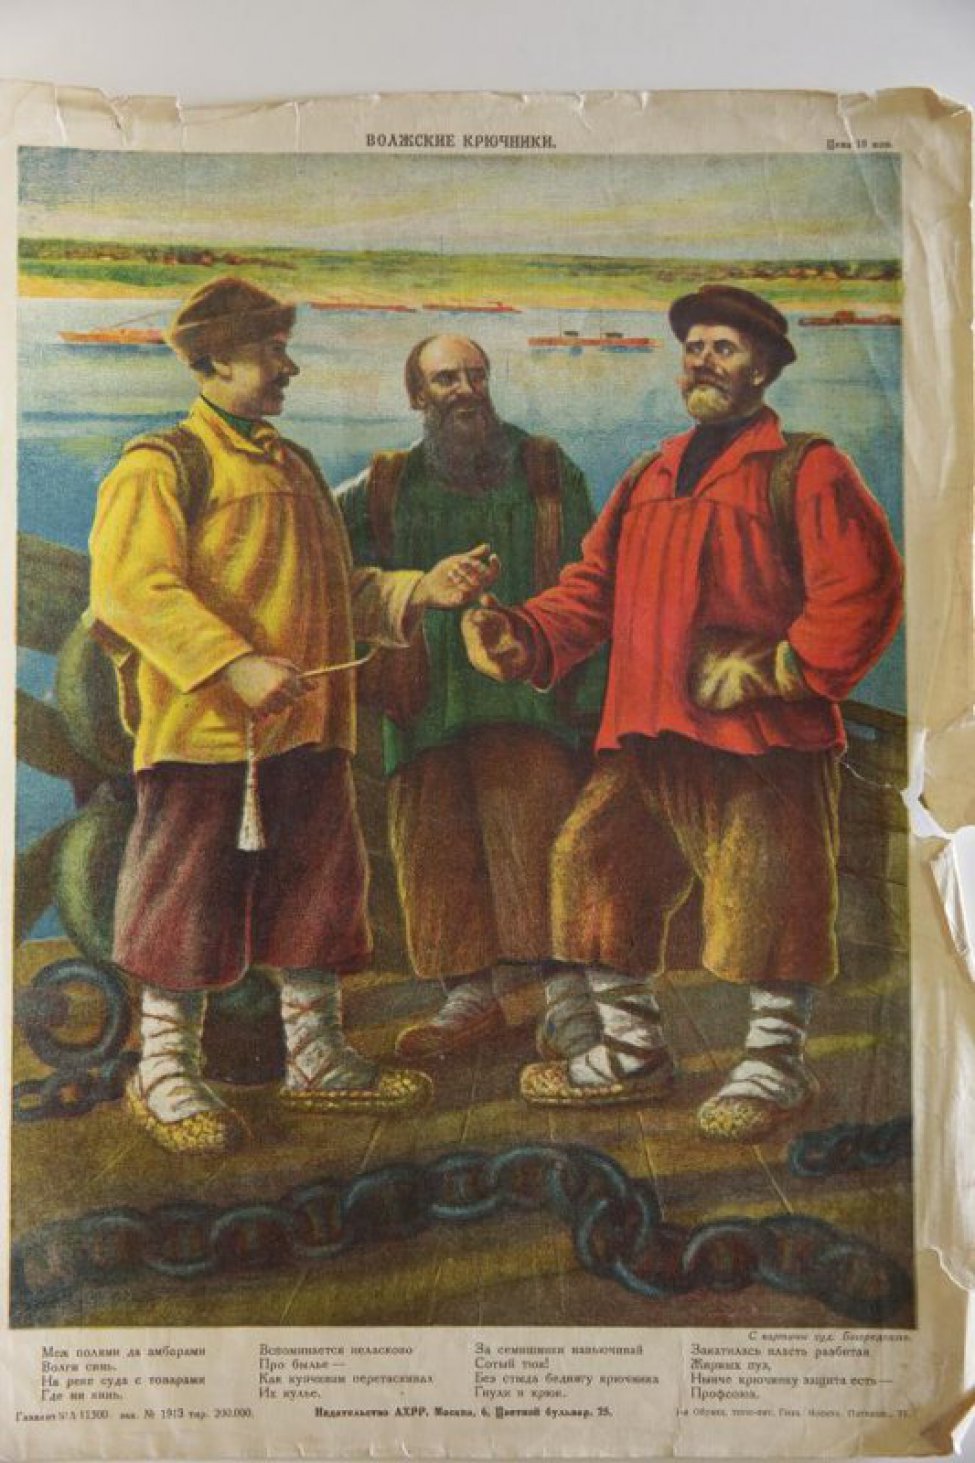 В центре изображены в рост трое мужчин в лаптях, стоящие на деревянном настиле. За ними видна река с баржами, противоположный зеленый берег.